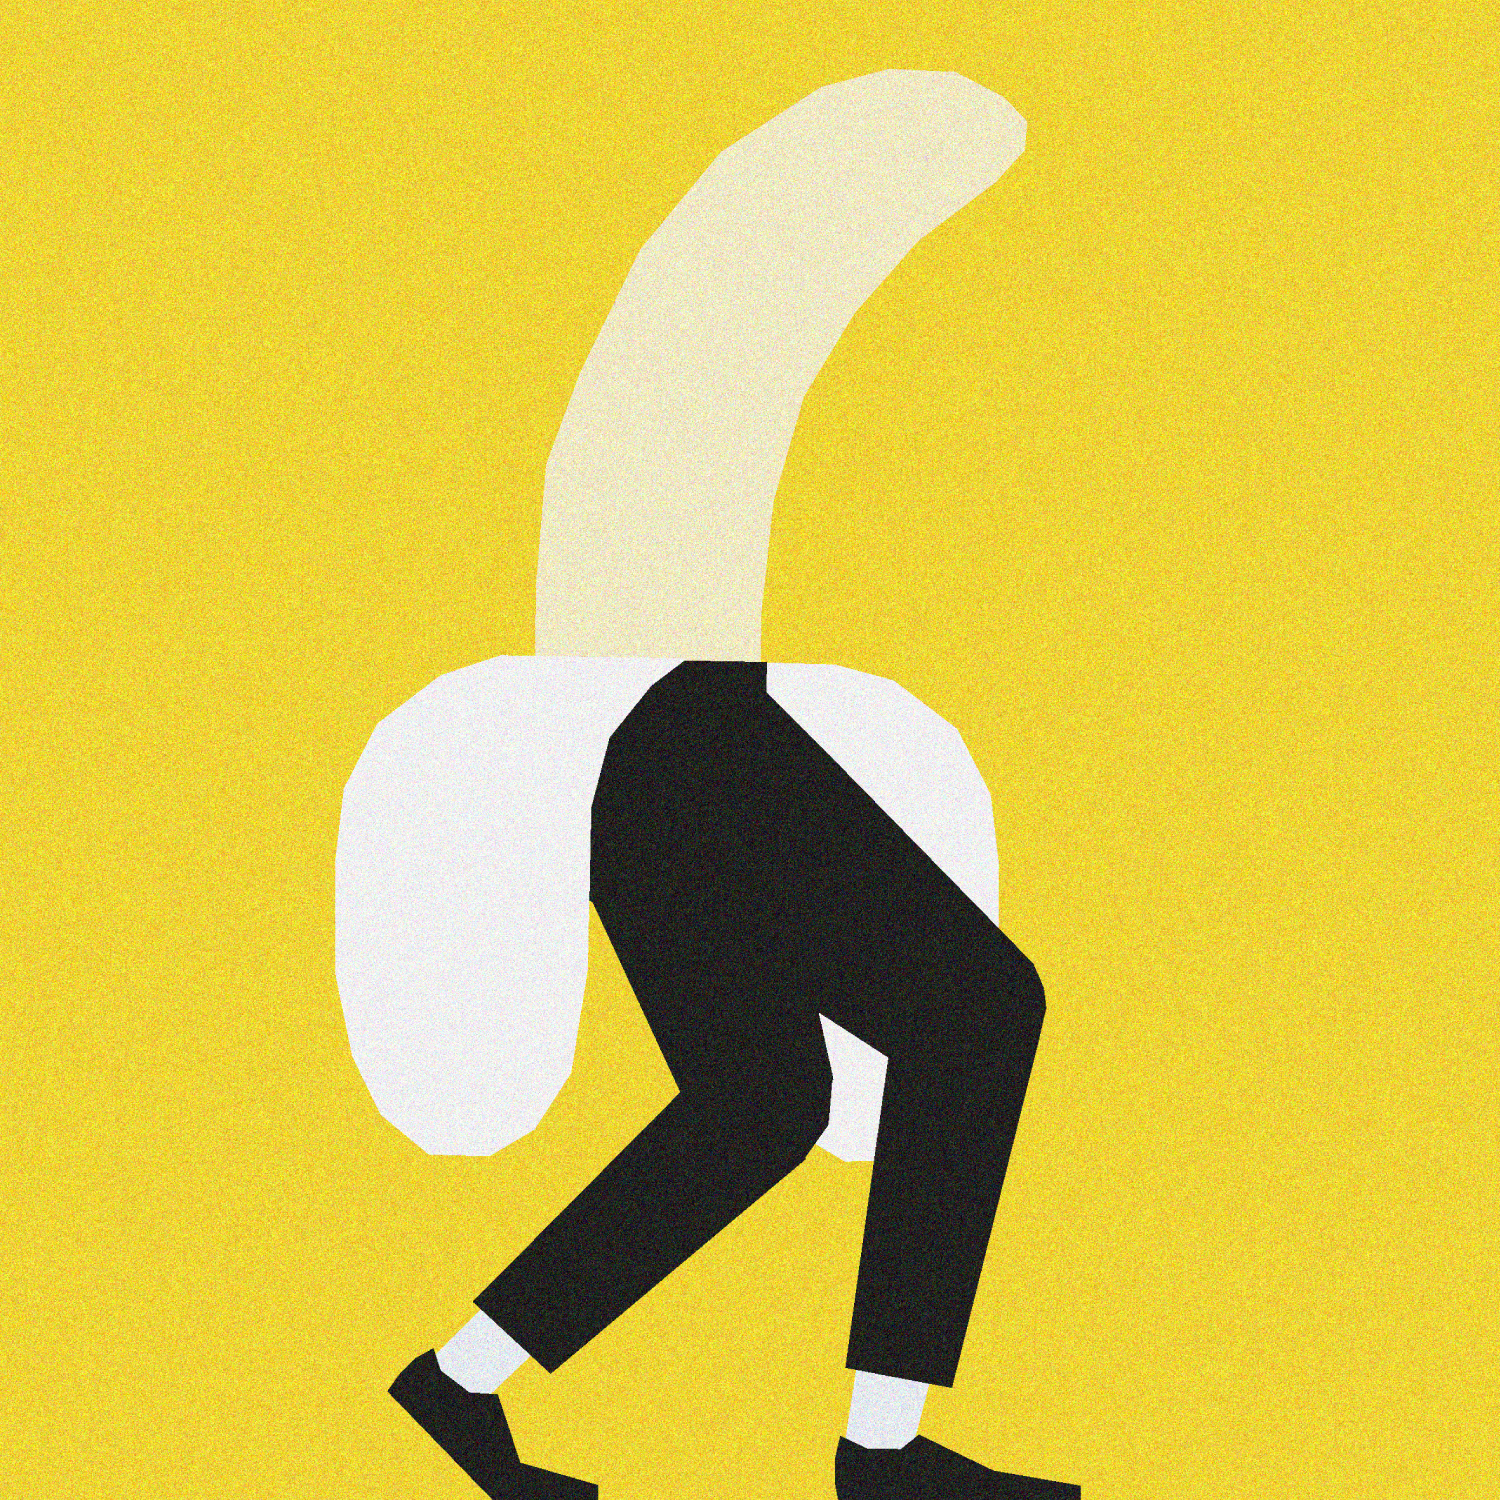 Peel slowler: Banana